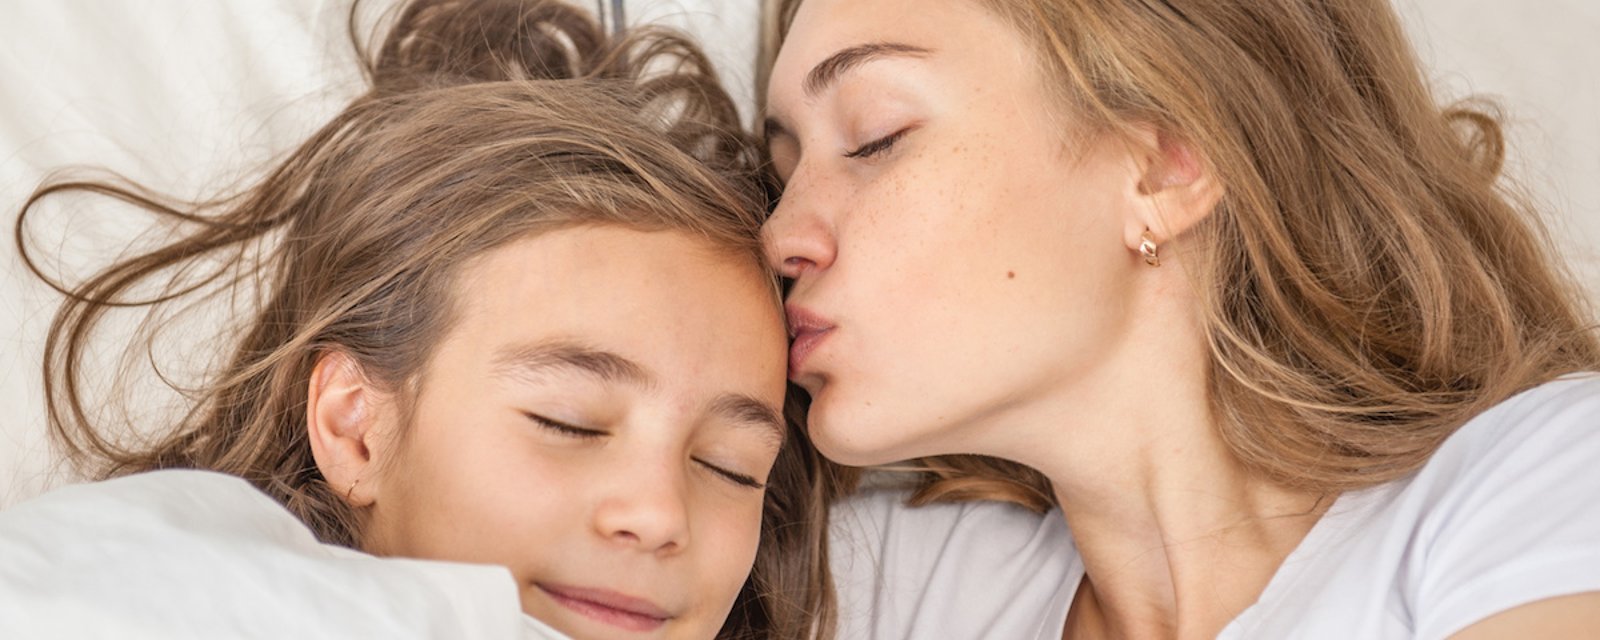 Vous allonger avec vos enfants jusqu'à ce qu'ils s'endorment n'est pas une mauvaise habitude